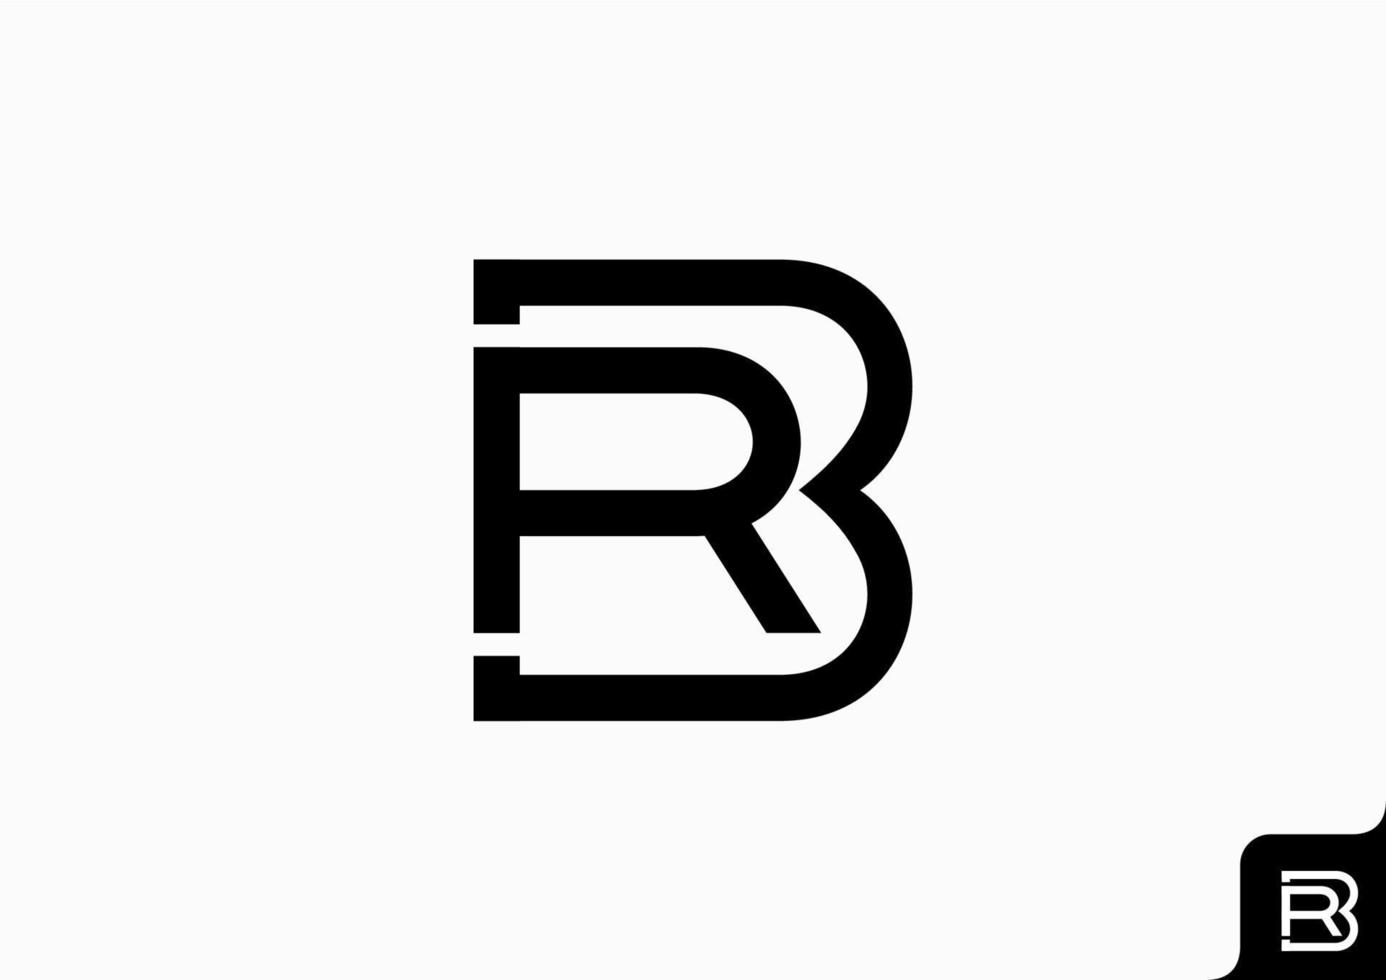 buchstabe br symbol logo flach minimalistisch bunt schwarz und weiß vektor